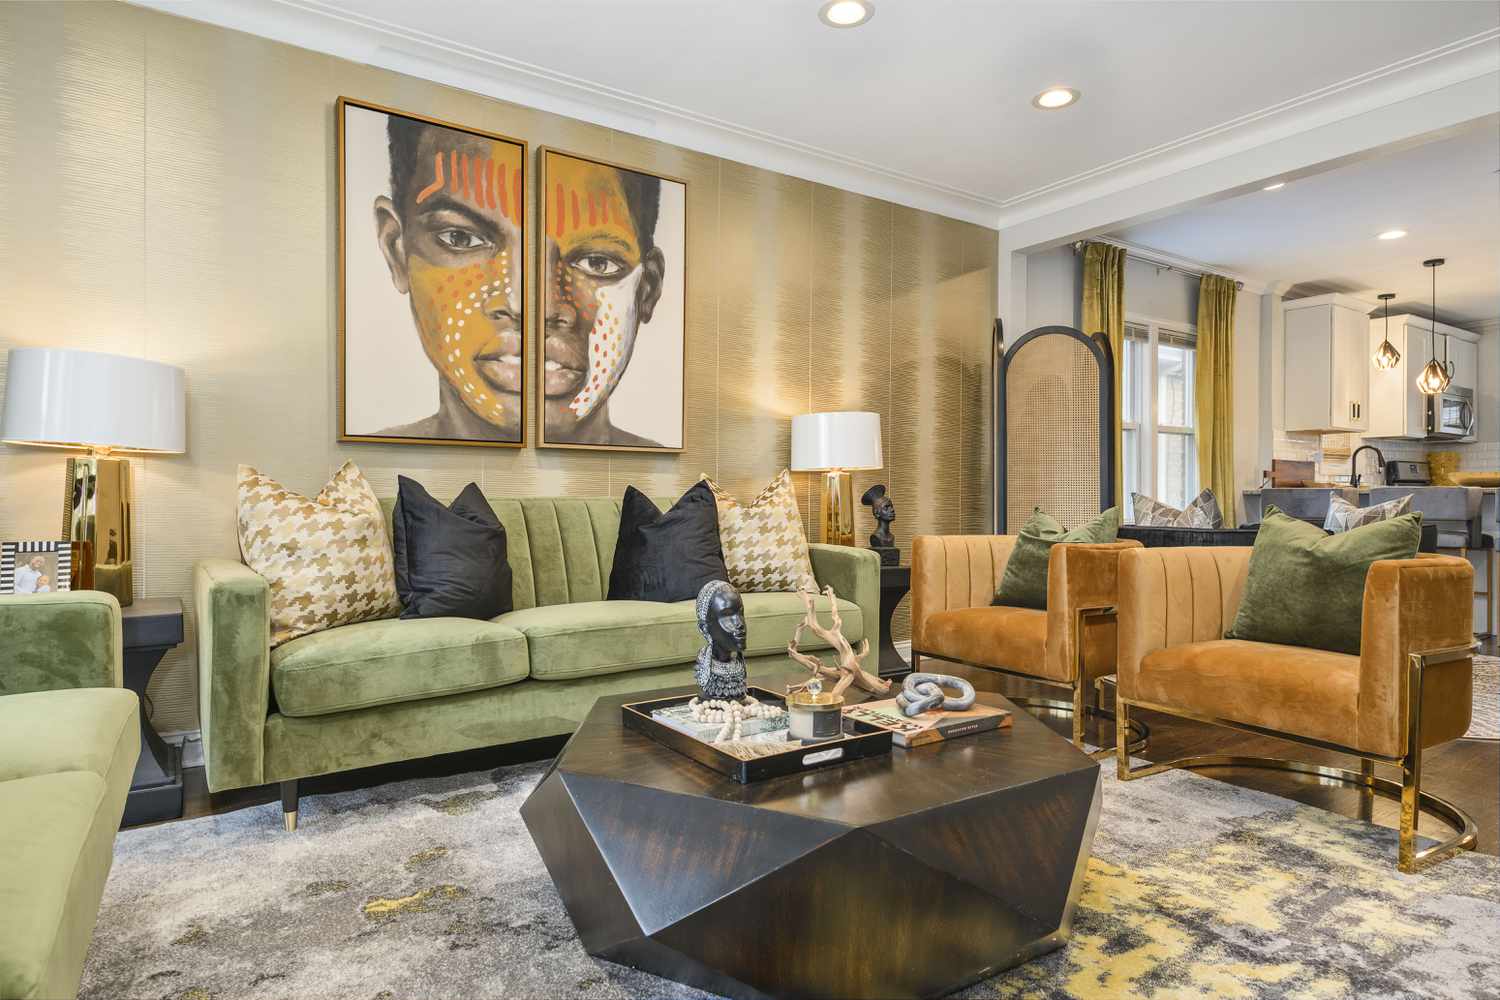 Uma sala de estar com um sofá de veludo verde, cadeiras de veludo castanho e arte emoldurada de inspiração africana na parede